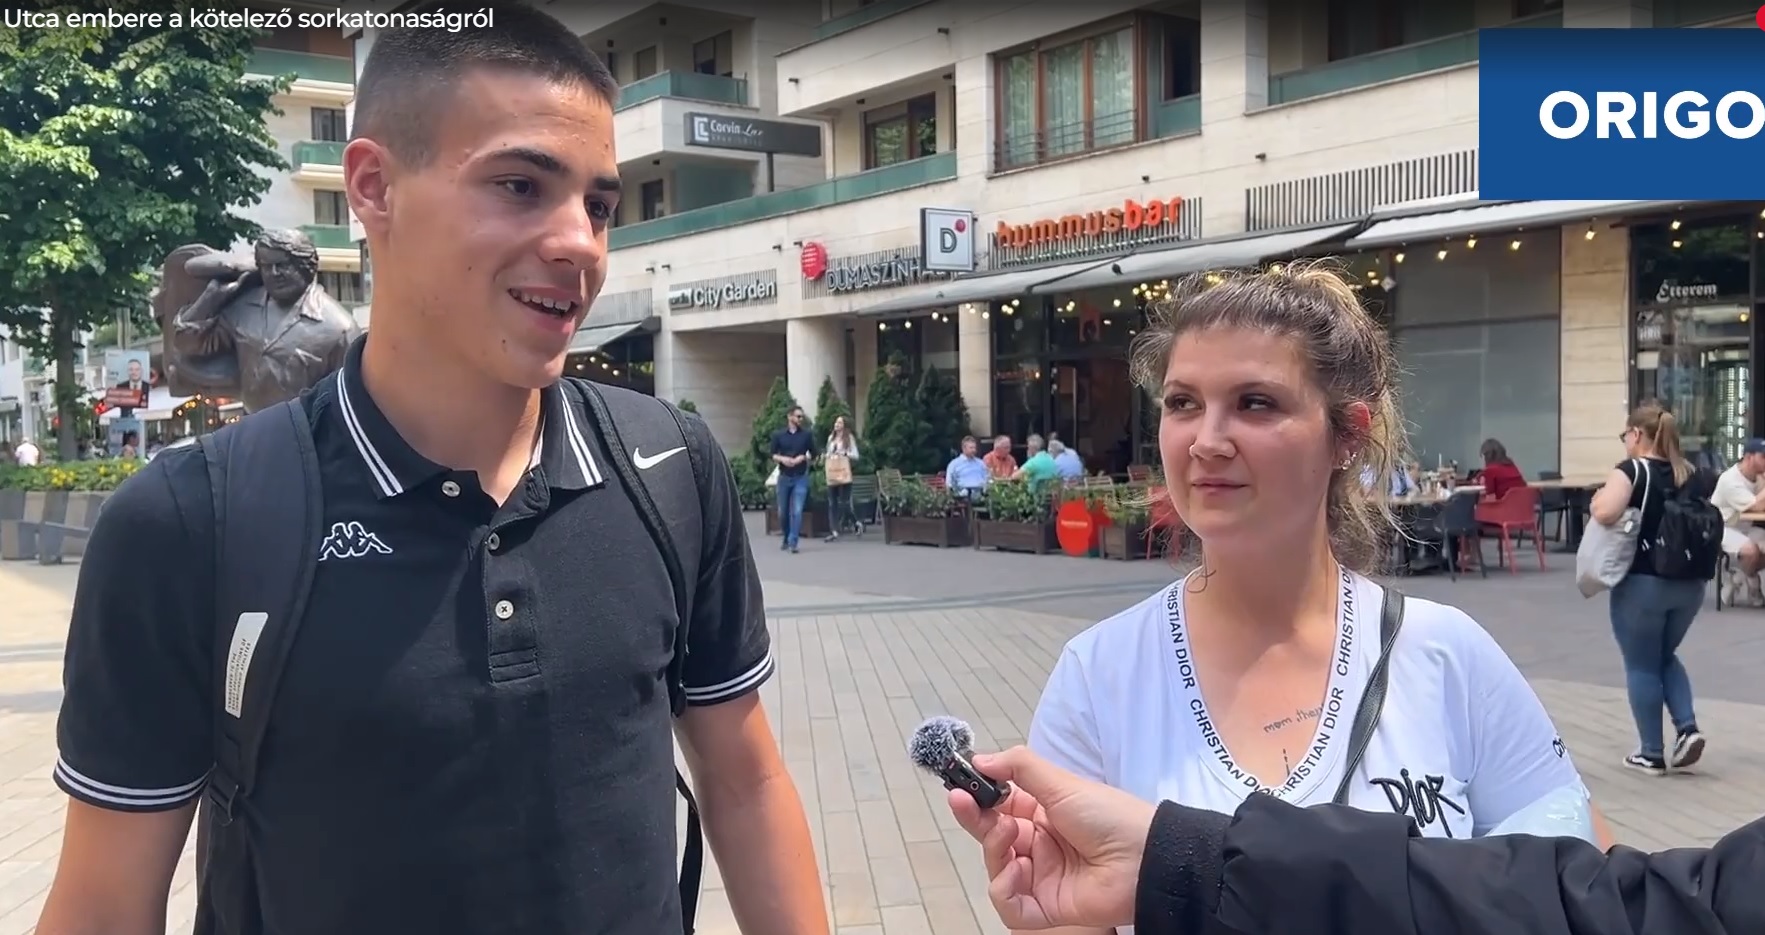 Megkérdezték az utca emberét a kötelező sorkatonaságról + videó